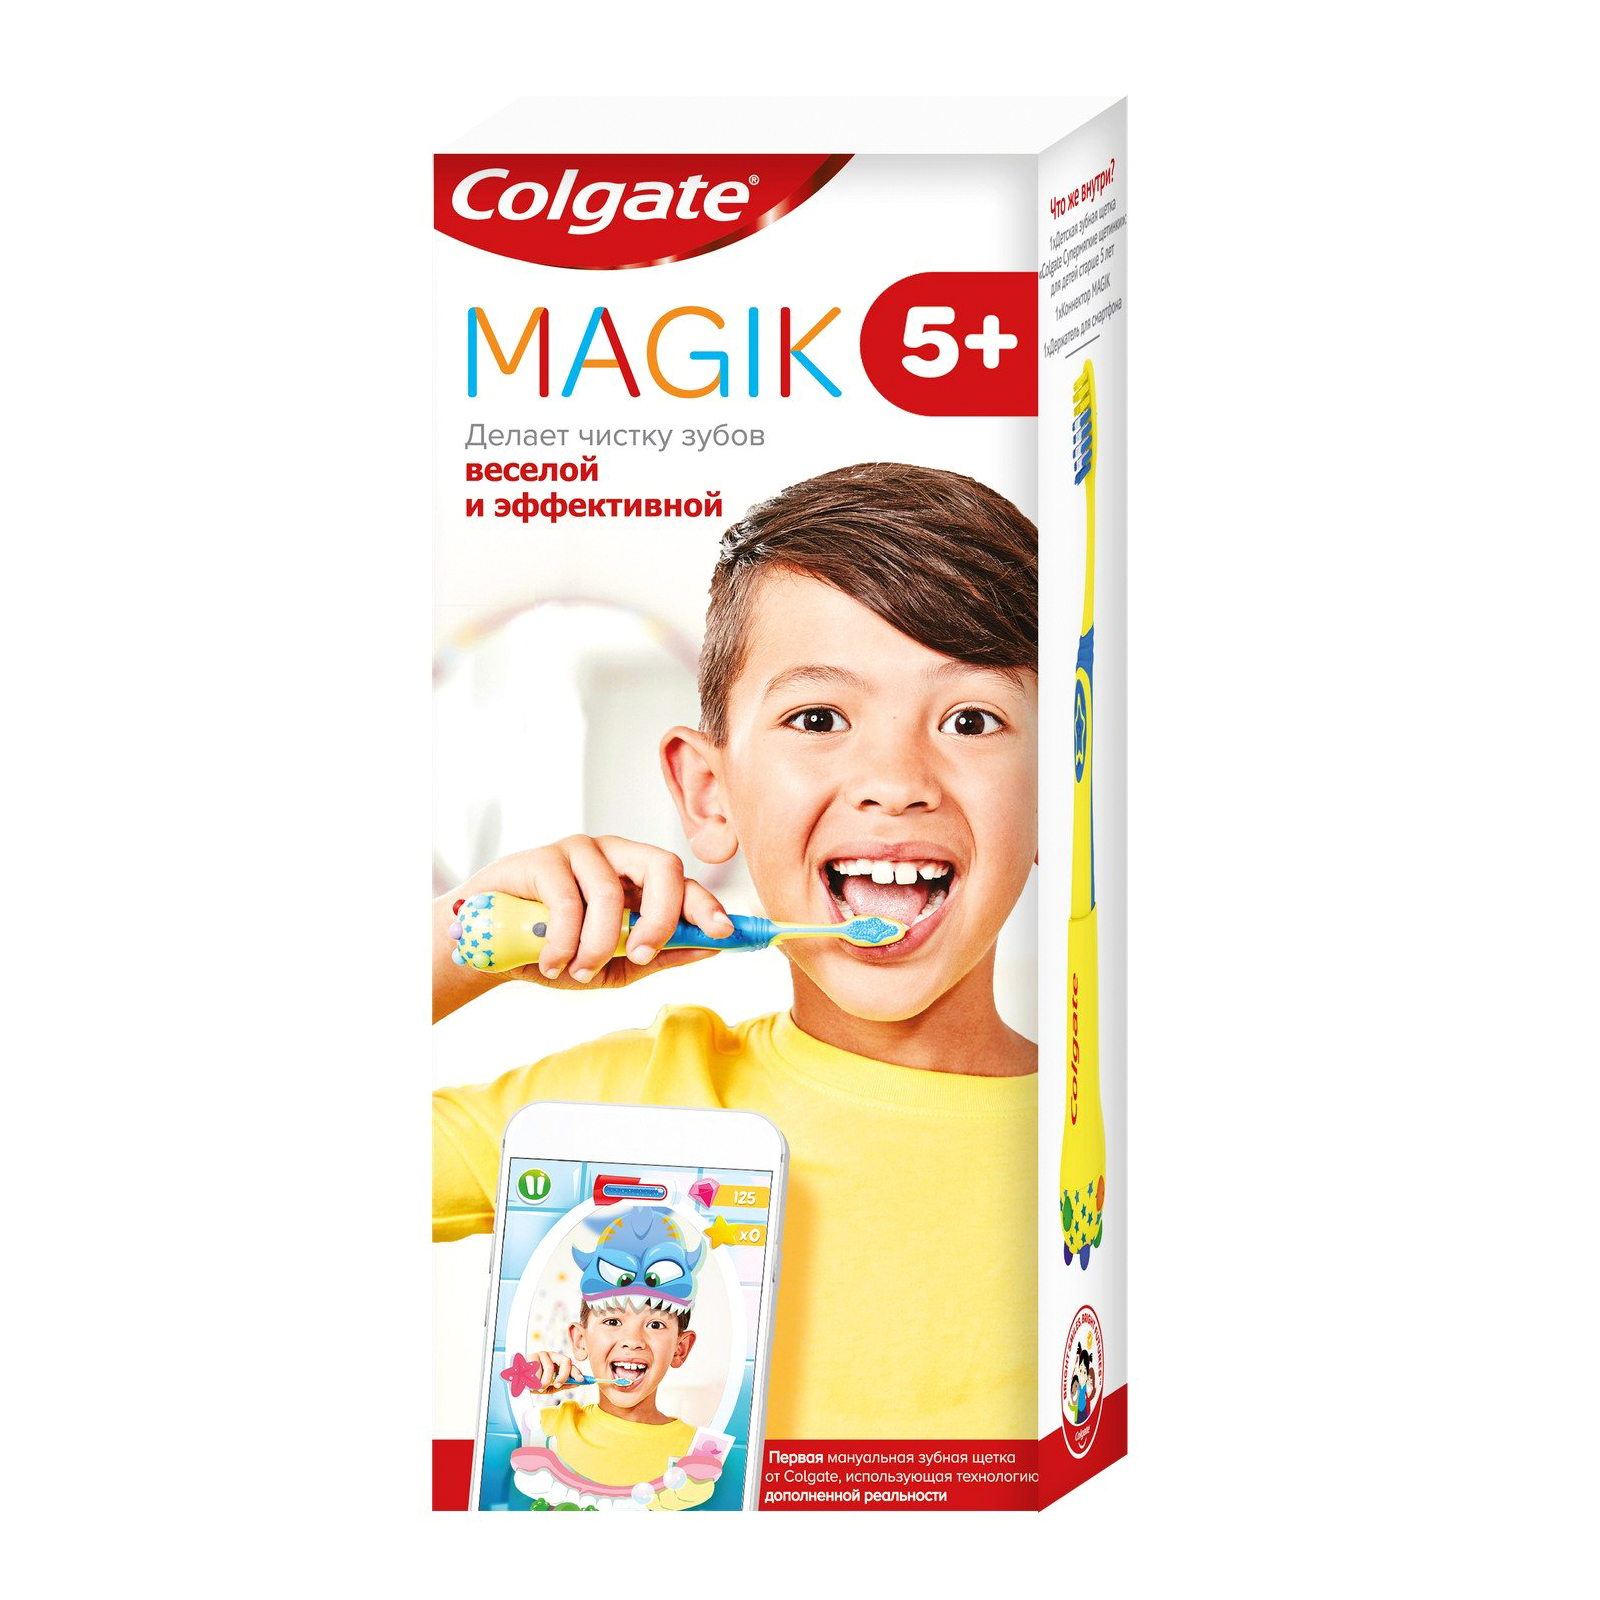 цена Детская зубная щетка Colgate Magik с приложением для чистки зубов, супермягкая, 5+